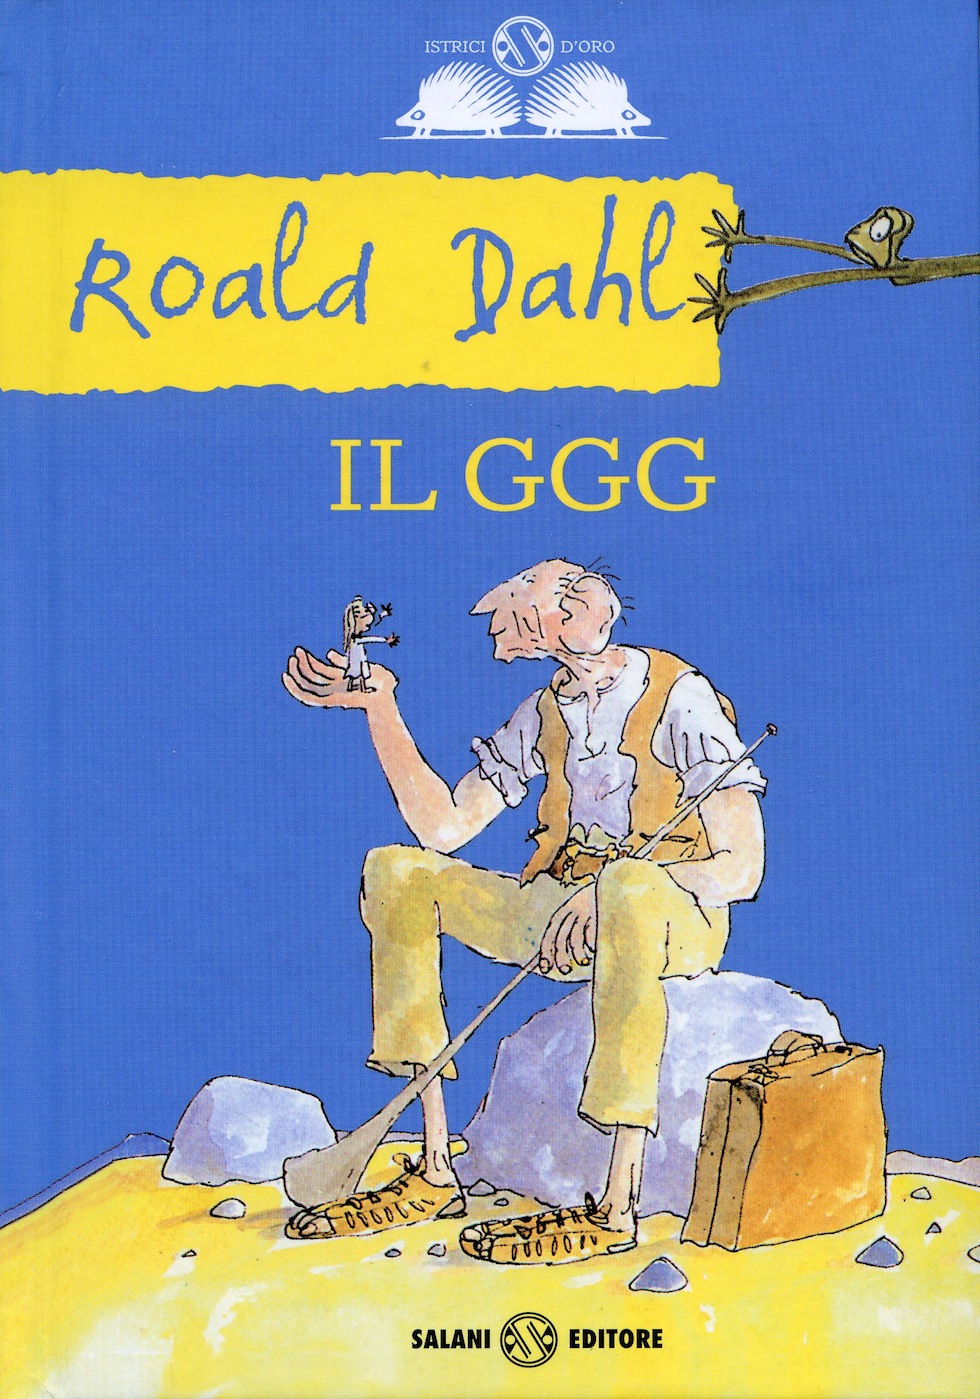 Le Streghe di Roald Dahl, recensione del libro